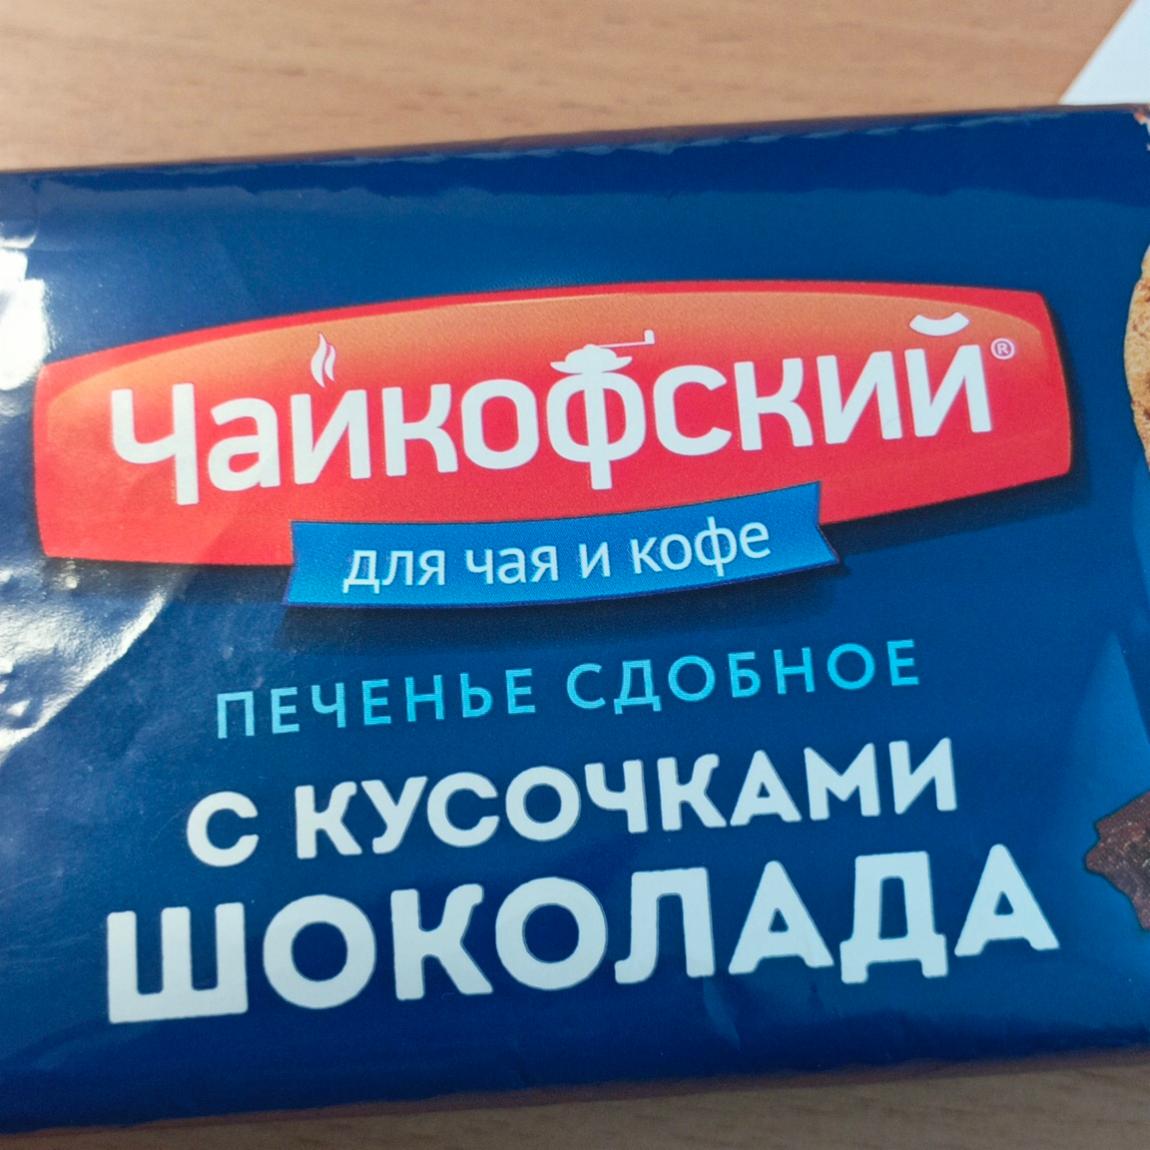 Фото - Печенье сдобное с кусочками шоколада Чайкофский